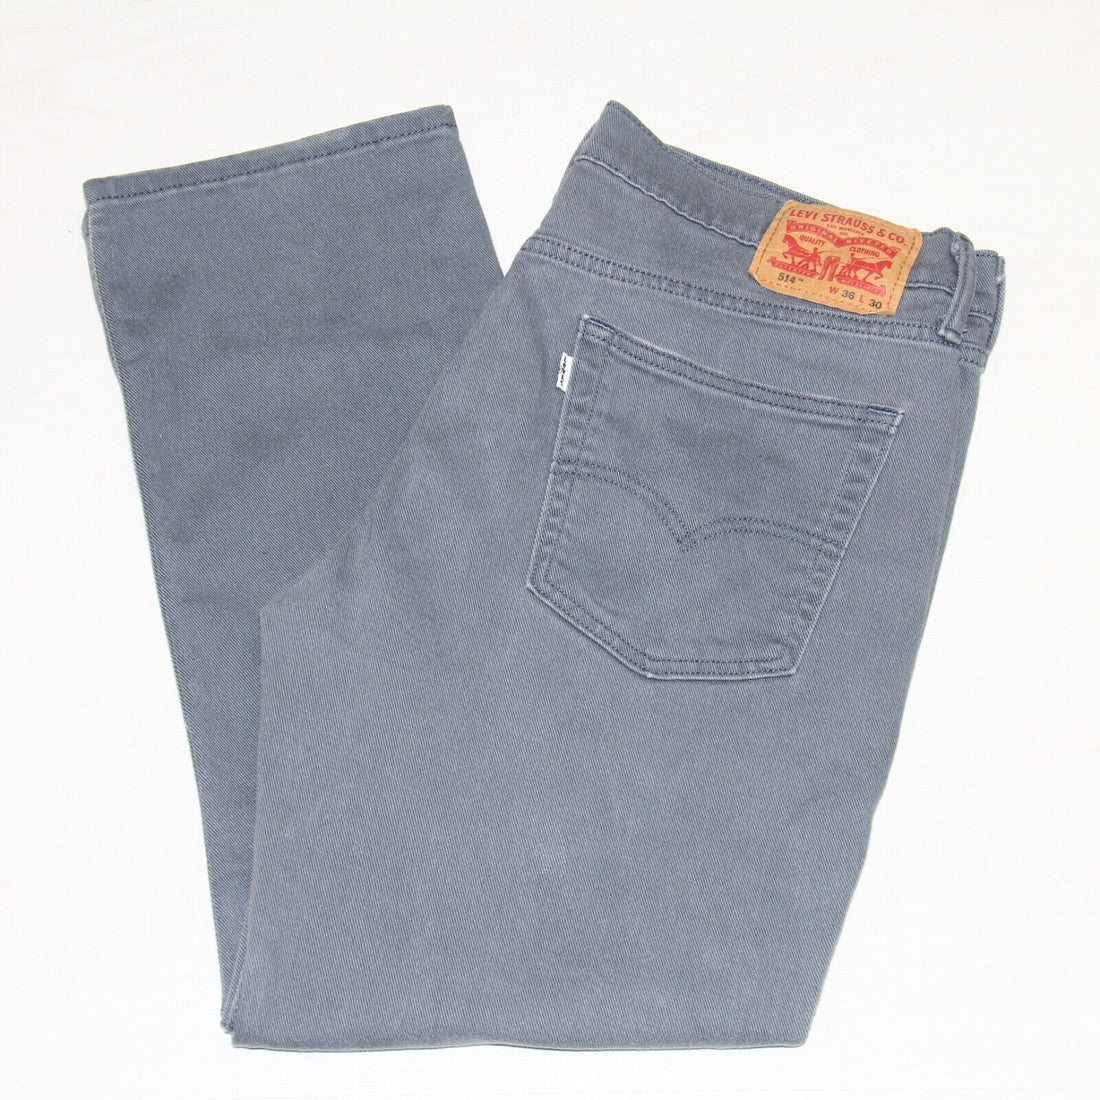 Levi Strauss & Co 514 Denim Jeans Size 36 X 30 Blue